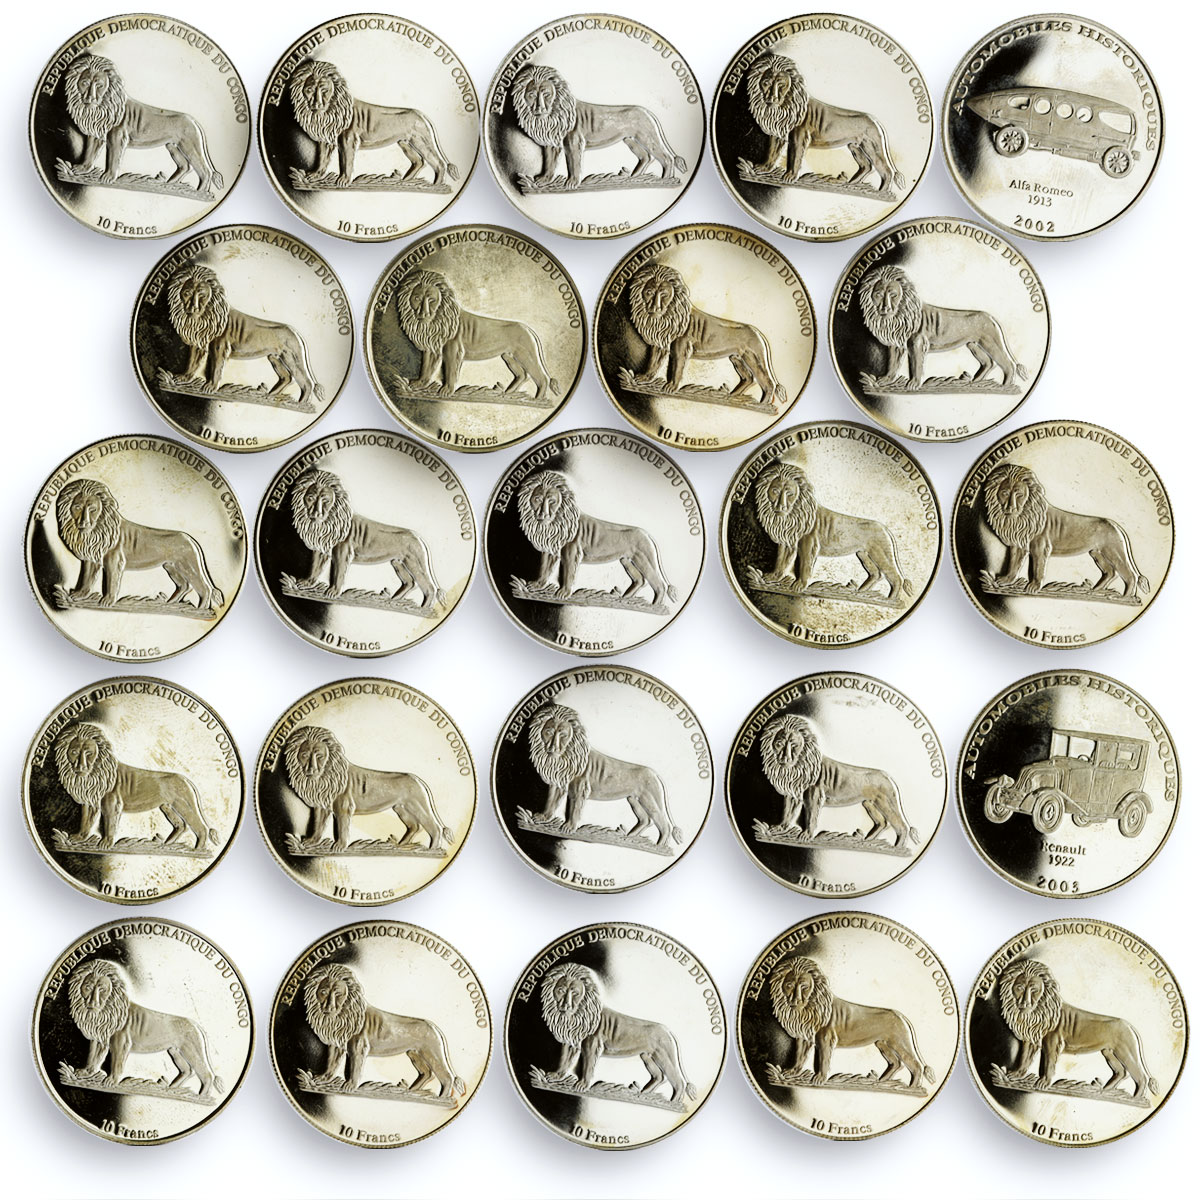 Congo set of 24 coins Historical Automobiles Collection CuNi coins 2002 - 2003